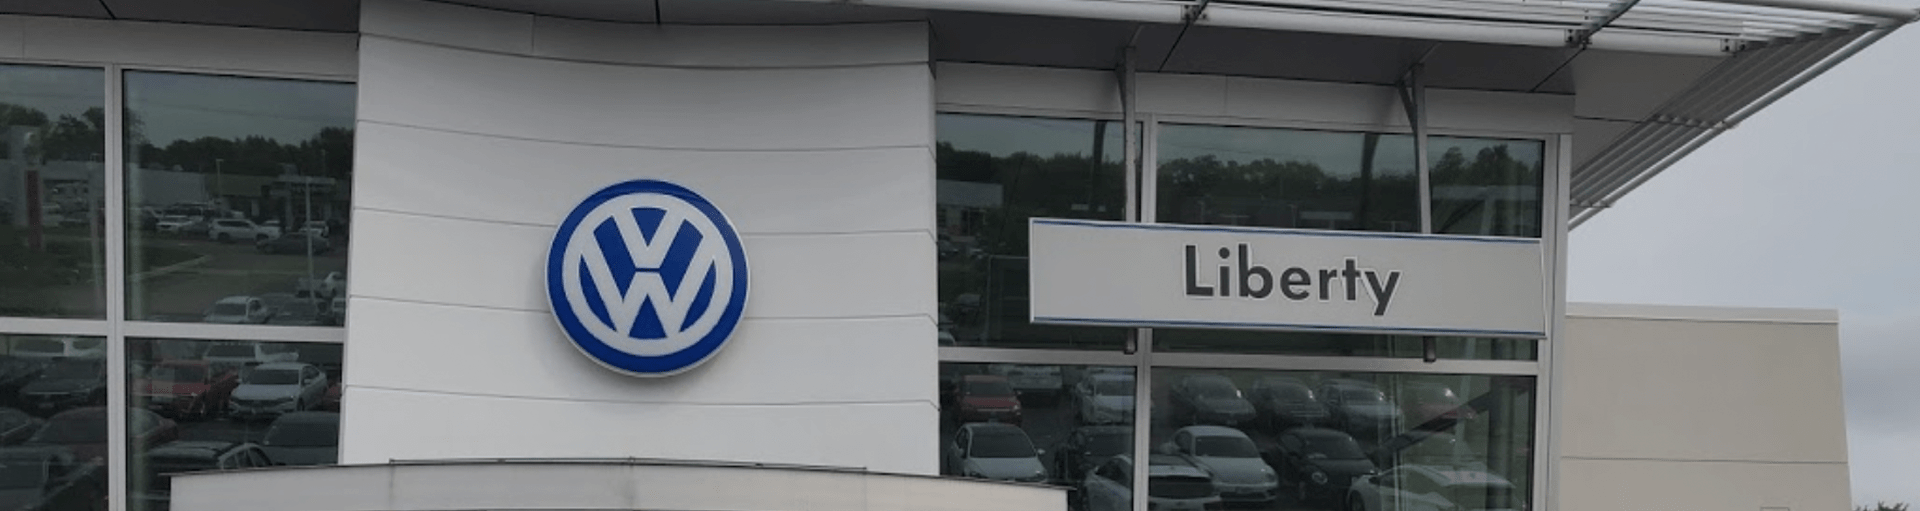 Libertyville Volkswagen Service Department